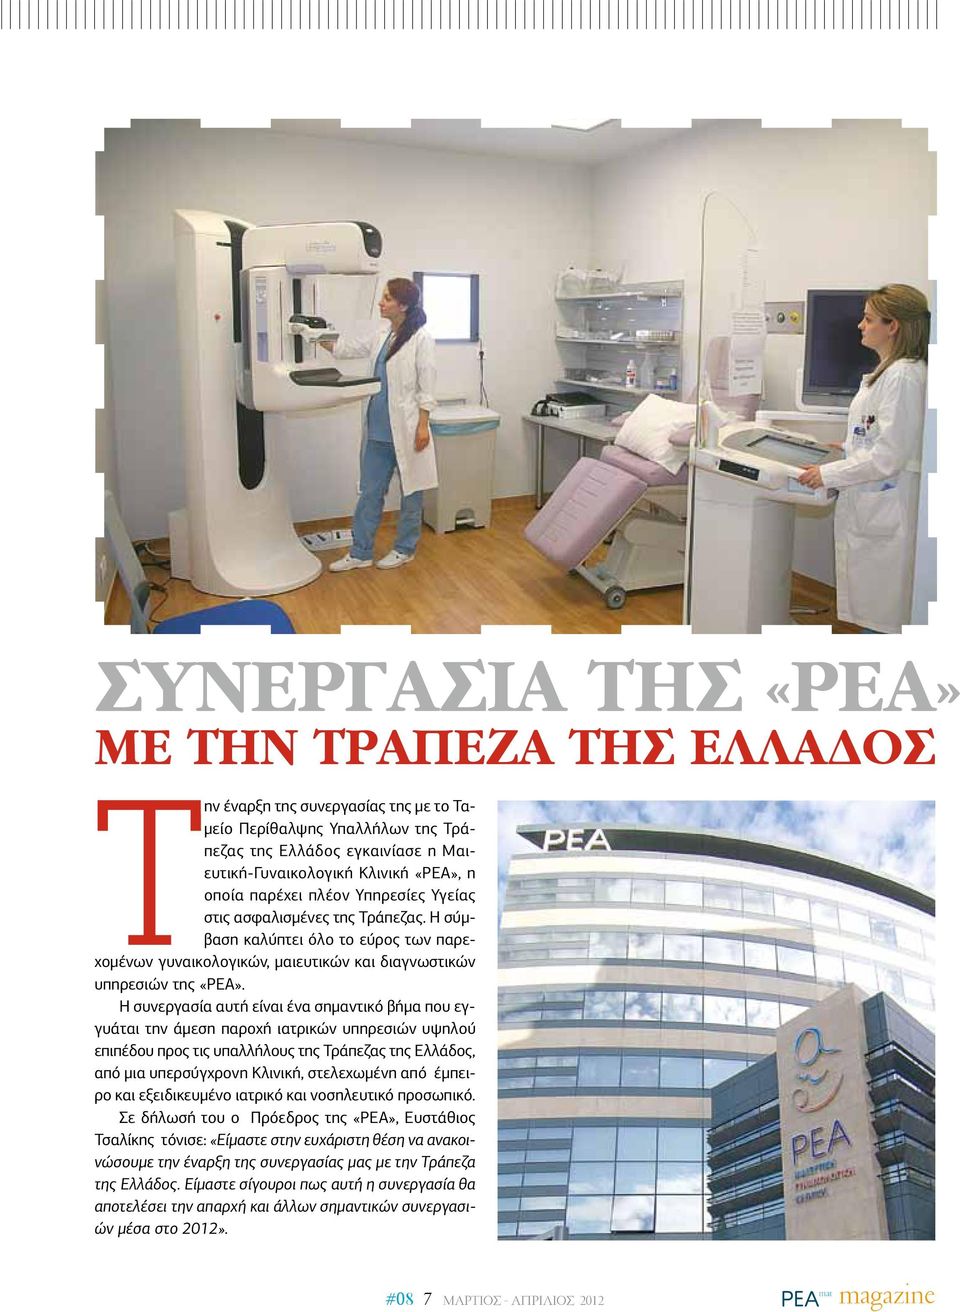 Η συνεργασία αυτή είναι ένα σημαντικό βήμα που εγγυάται την άμεση παροχή ιατρικών υπηρεσιών υψηλού επιπέδου προς τις υπαλλήλους της Τράπεζας της Ελλάδος, από μια υπερσύγχρονη Κλινική, στελεχωμένη από